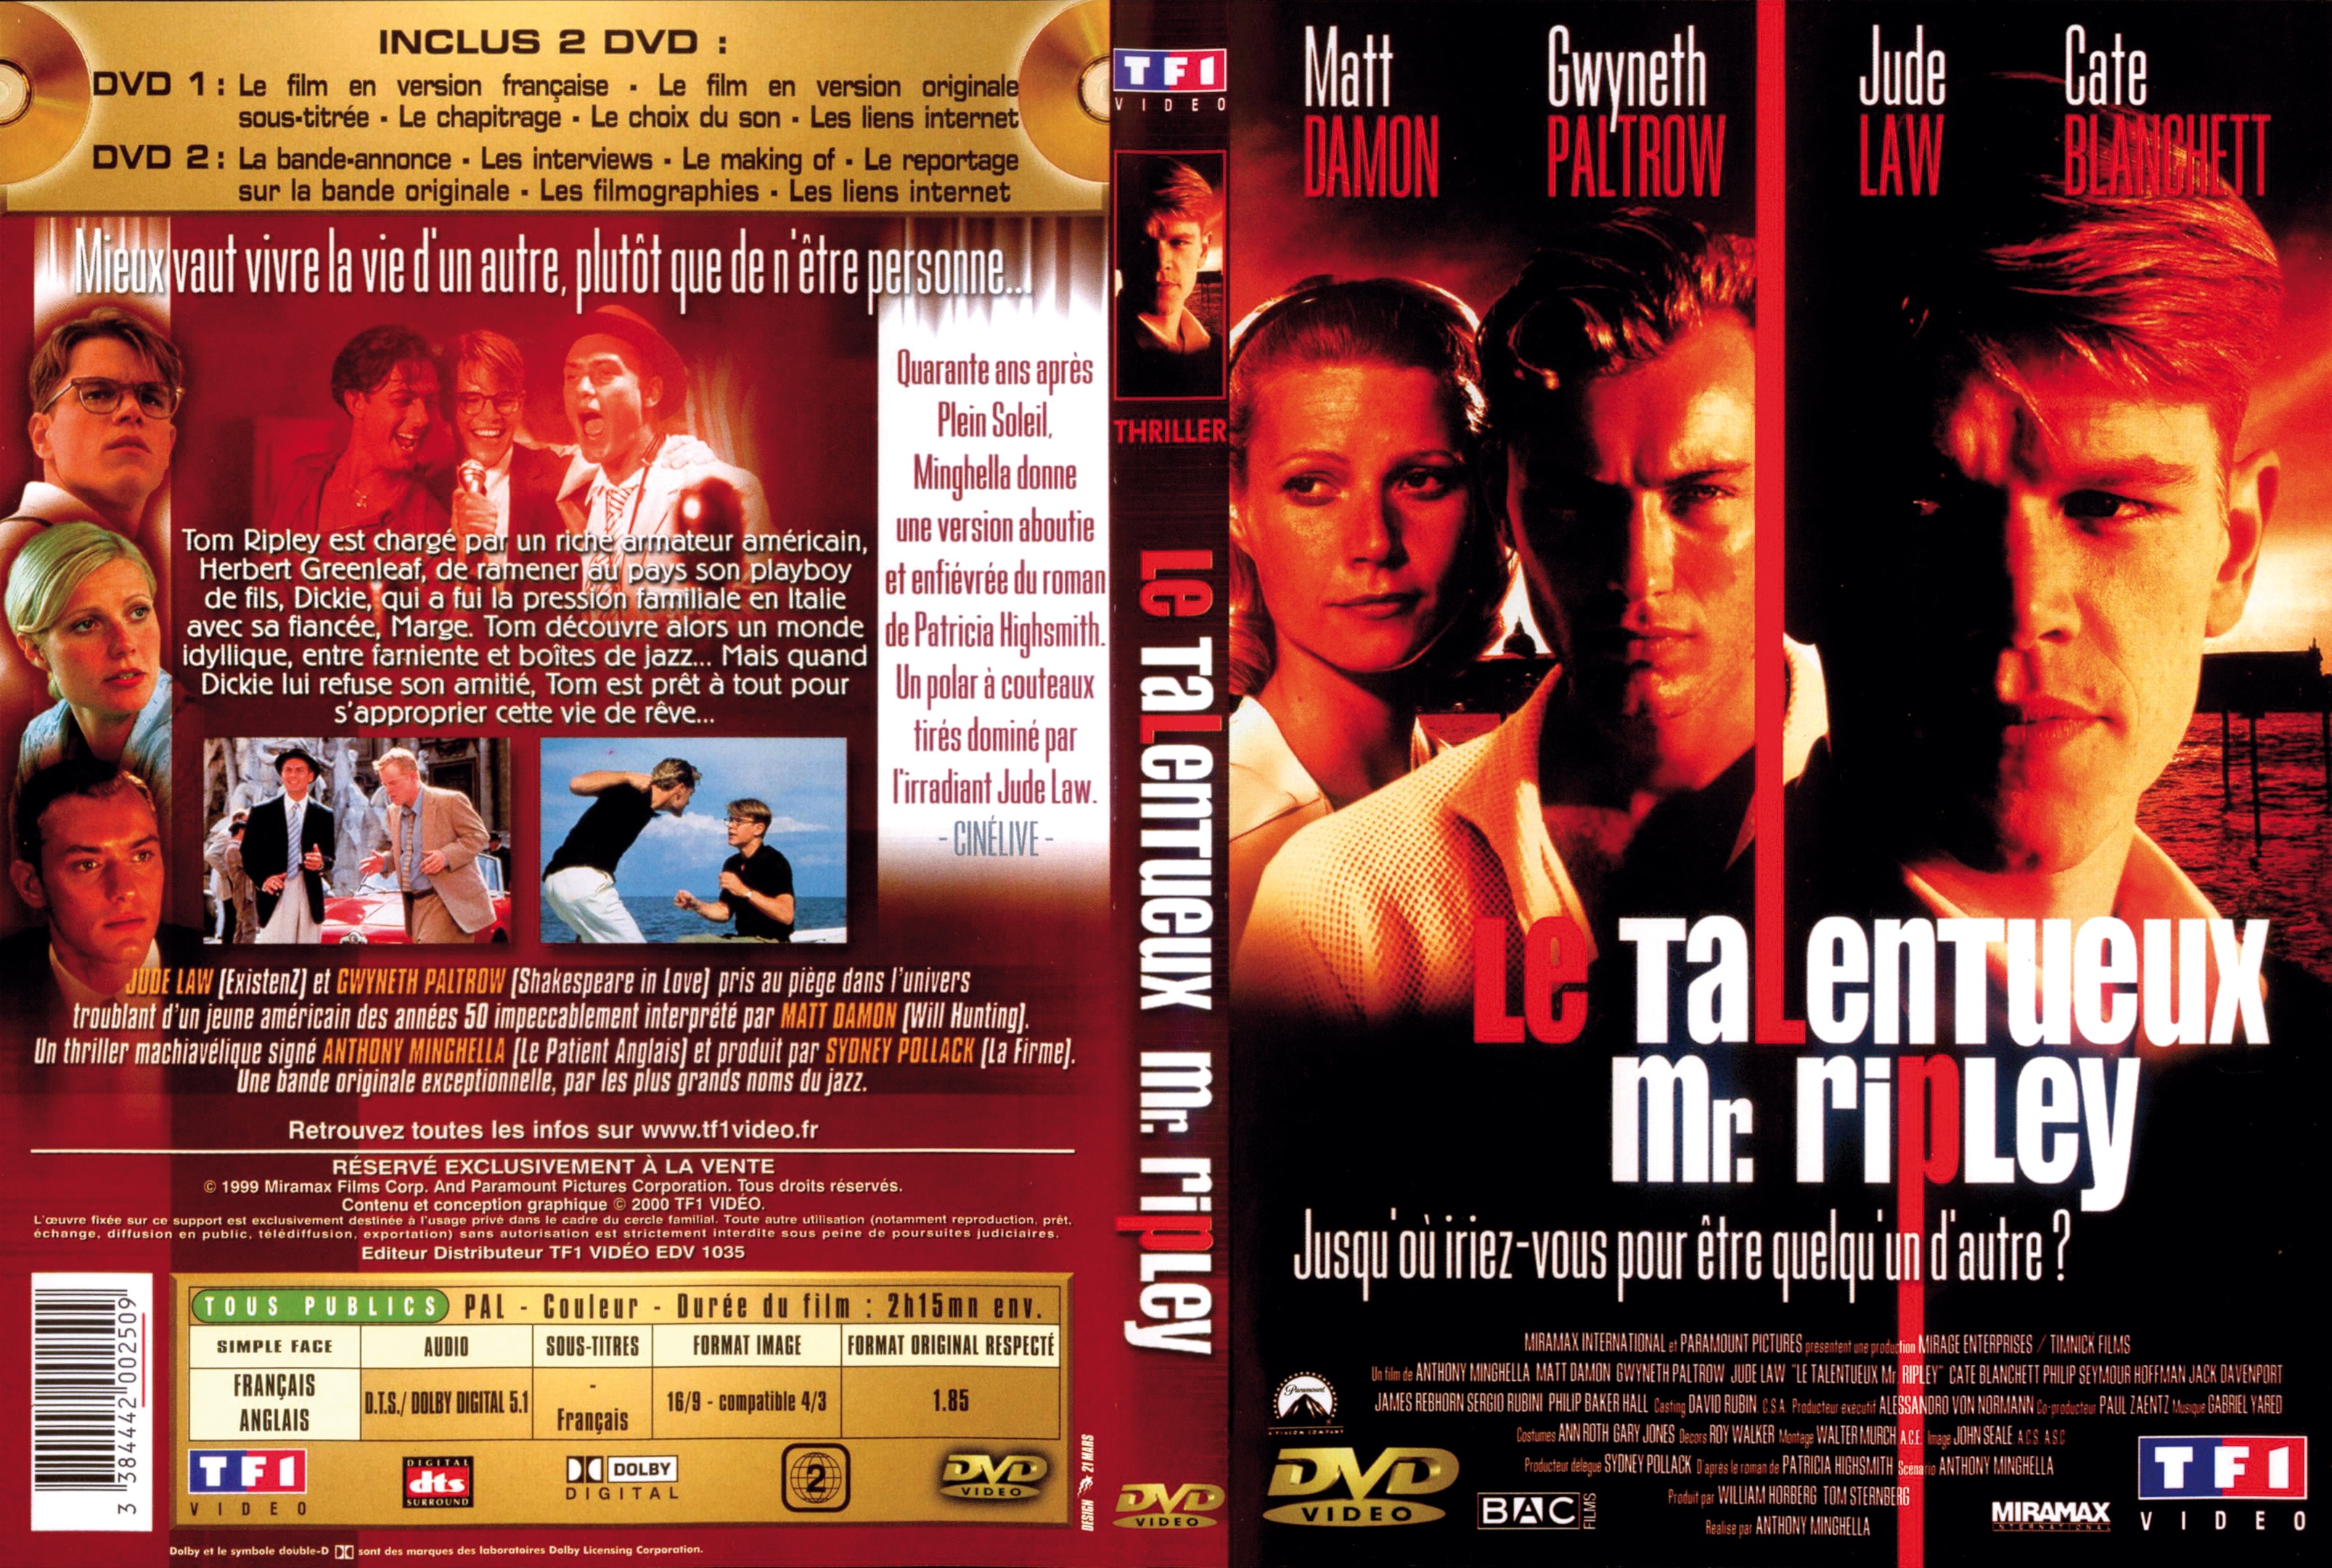 Jaquette DVD Le talentueux Mr Ripley v2